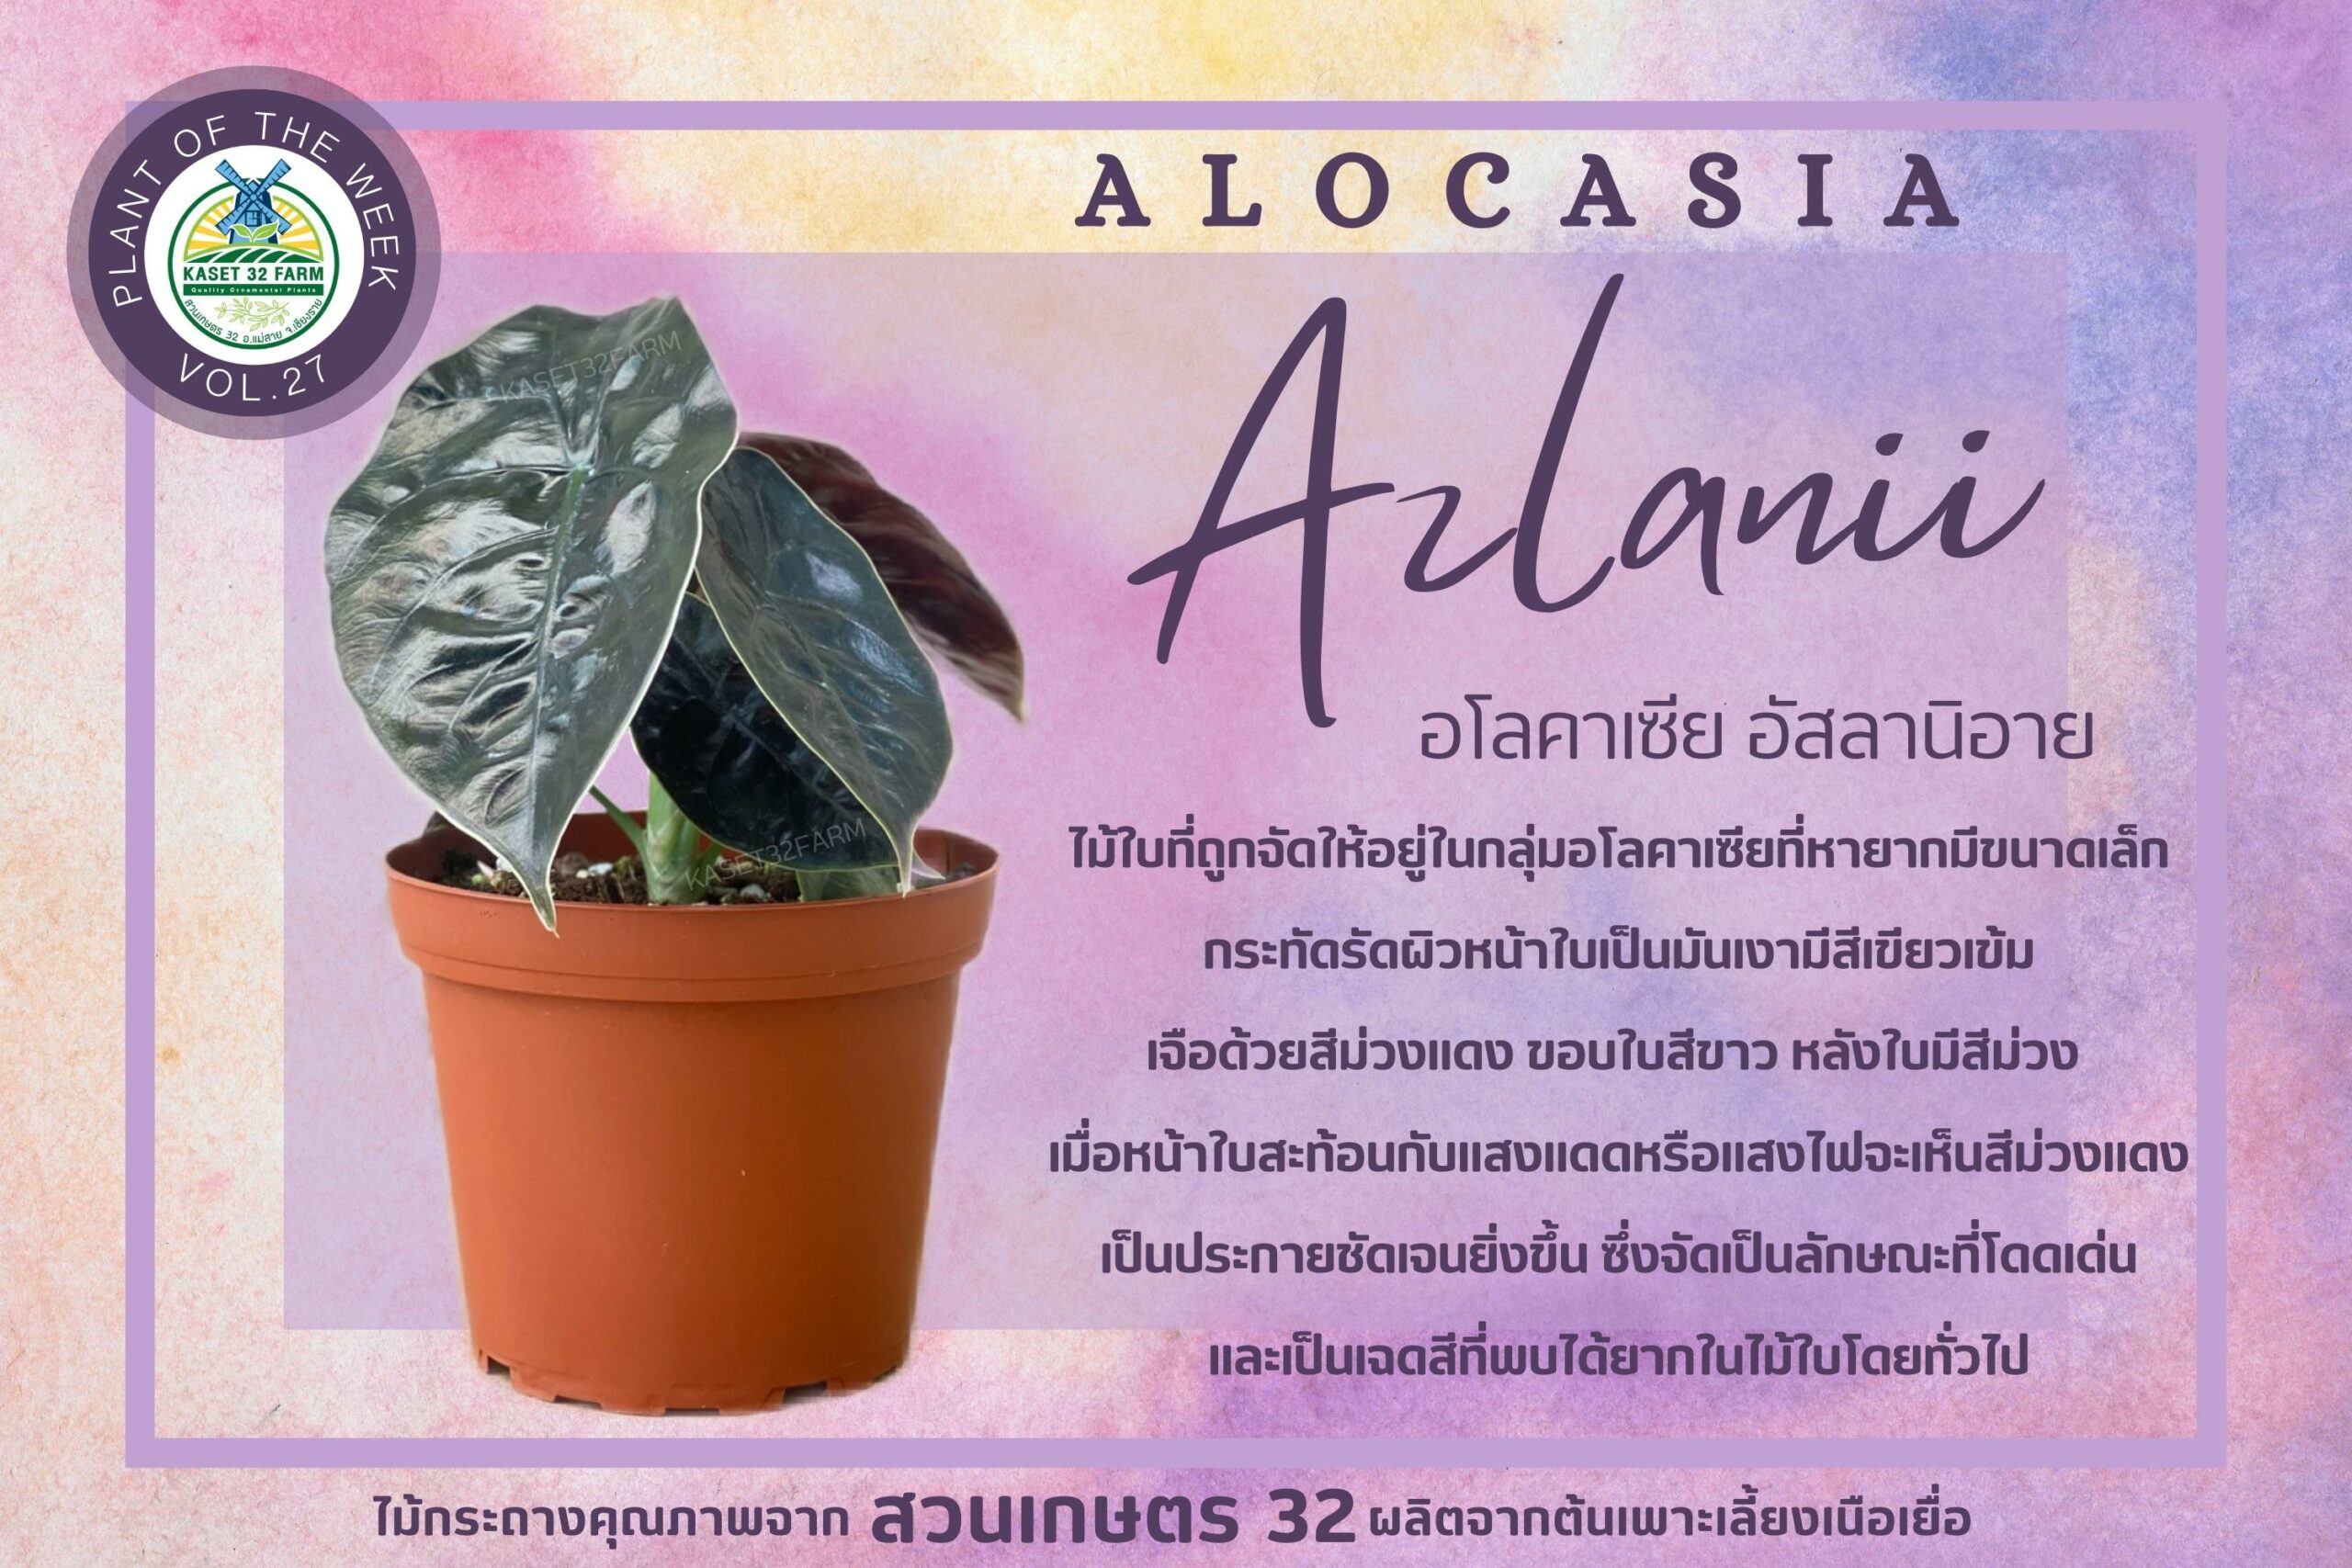 แนะนำพันธุ์ไม้ Alocasia ‘Azlanii’